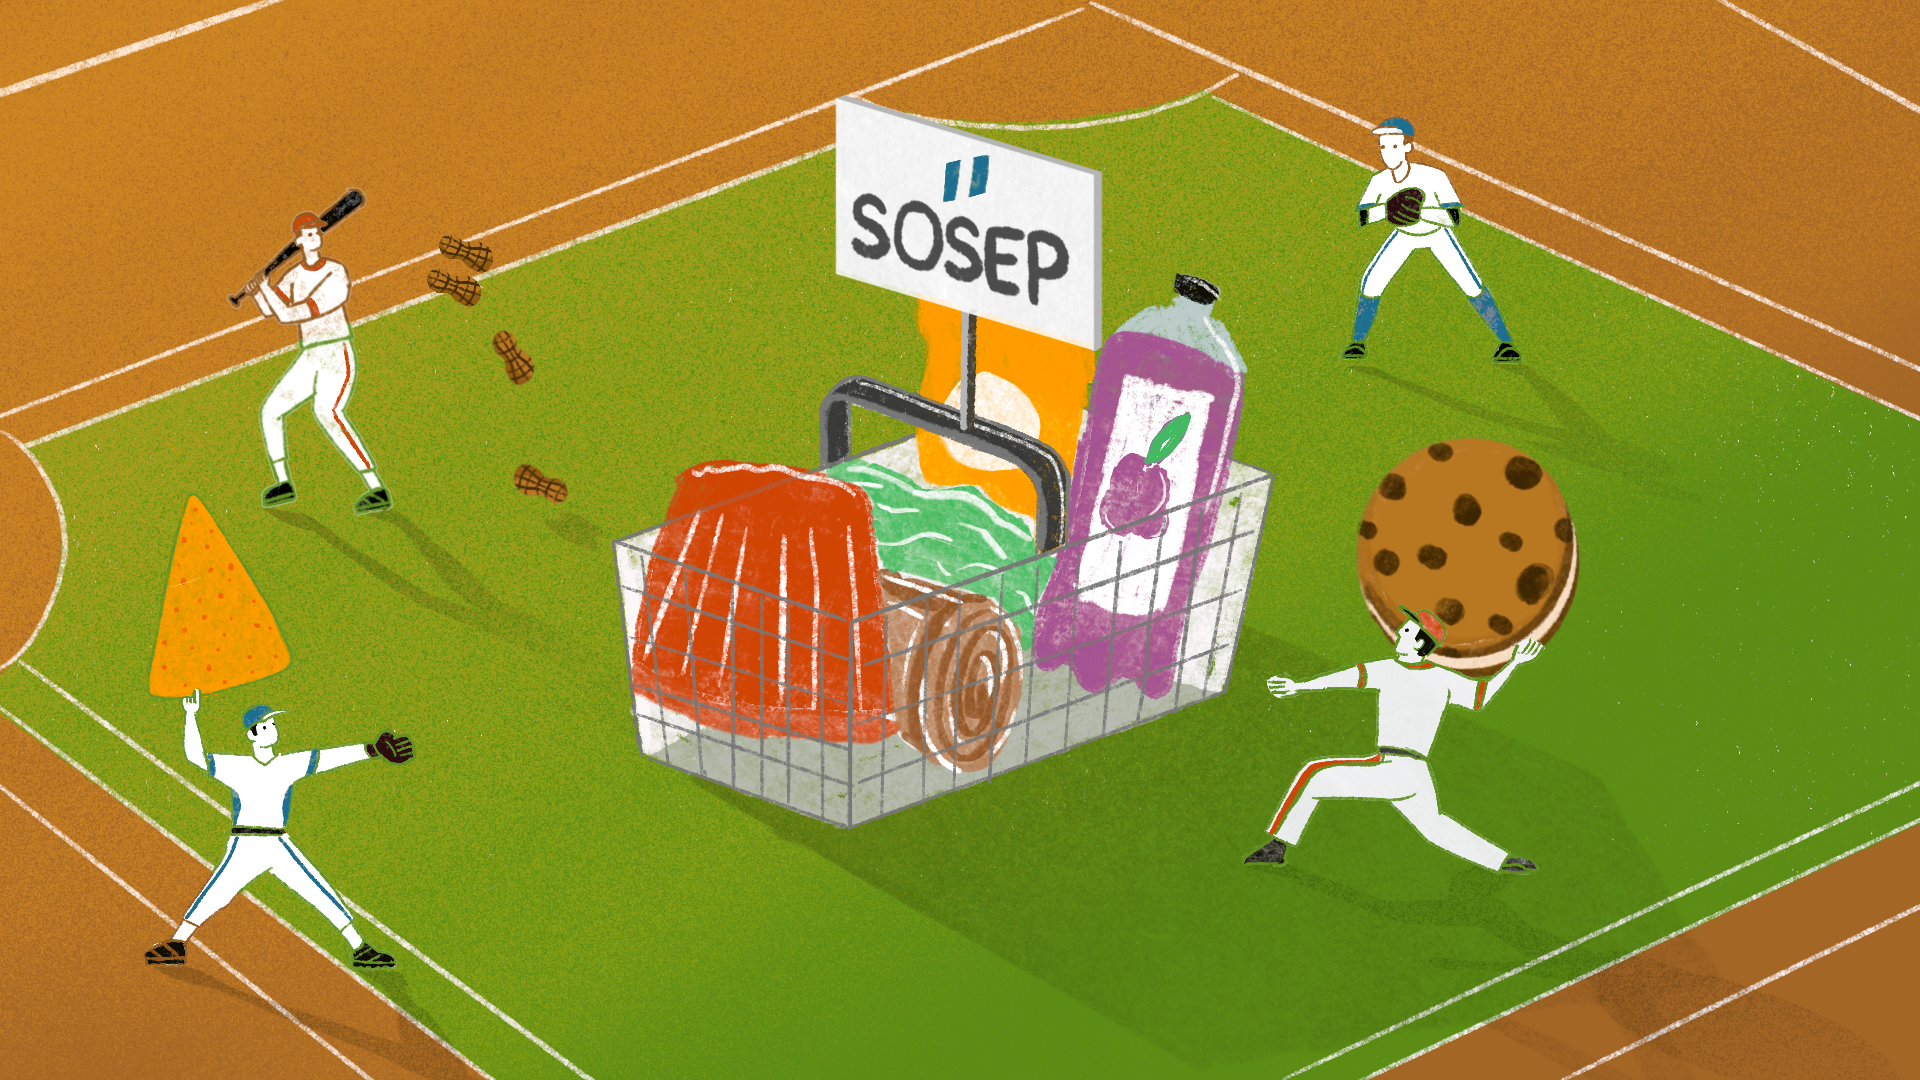 Ilustración sobre red de sofbol que provee de insumos sobrevalorados a la SOSEP. Ilustración: Diego Orellana